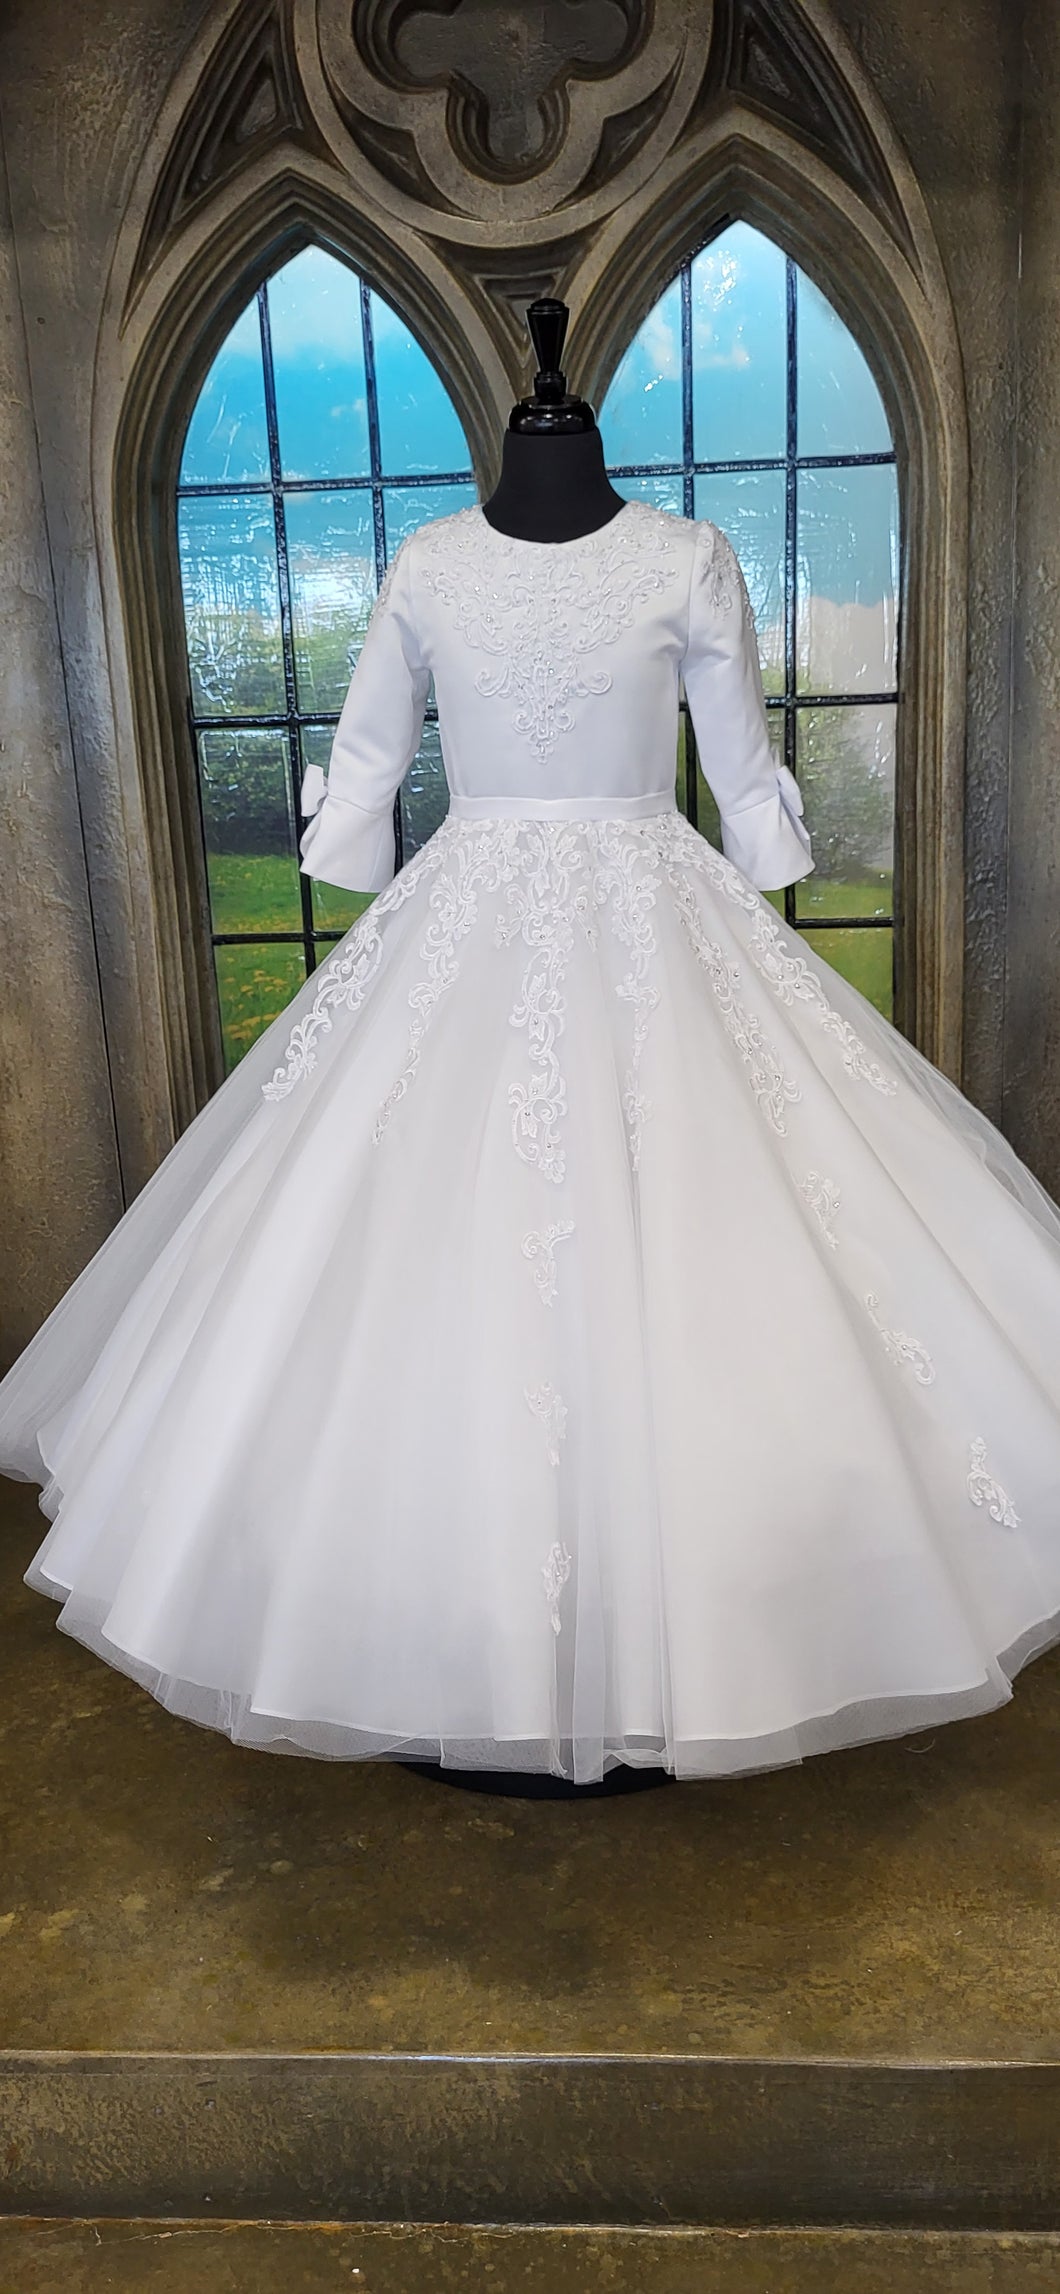 SALE COMMUNION DRESS ExclusiveTo KINDLE Rosa Bella Girls White Communion Dress:- Sophie